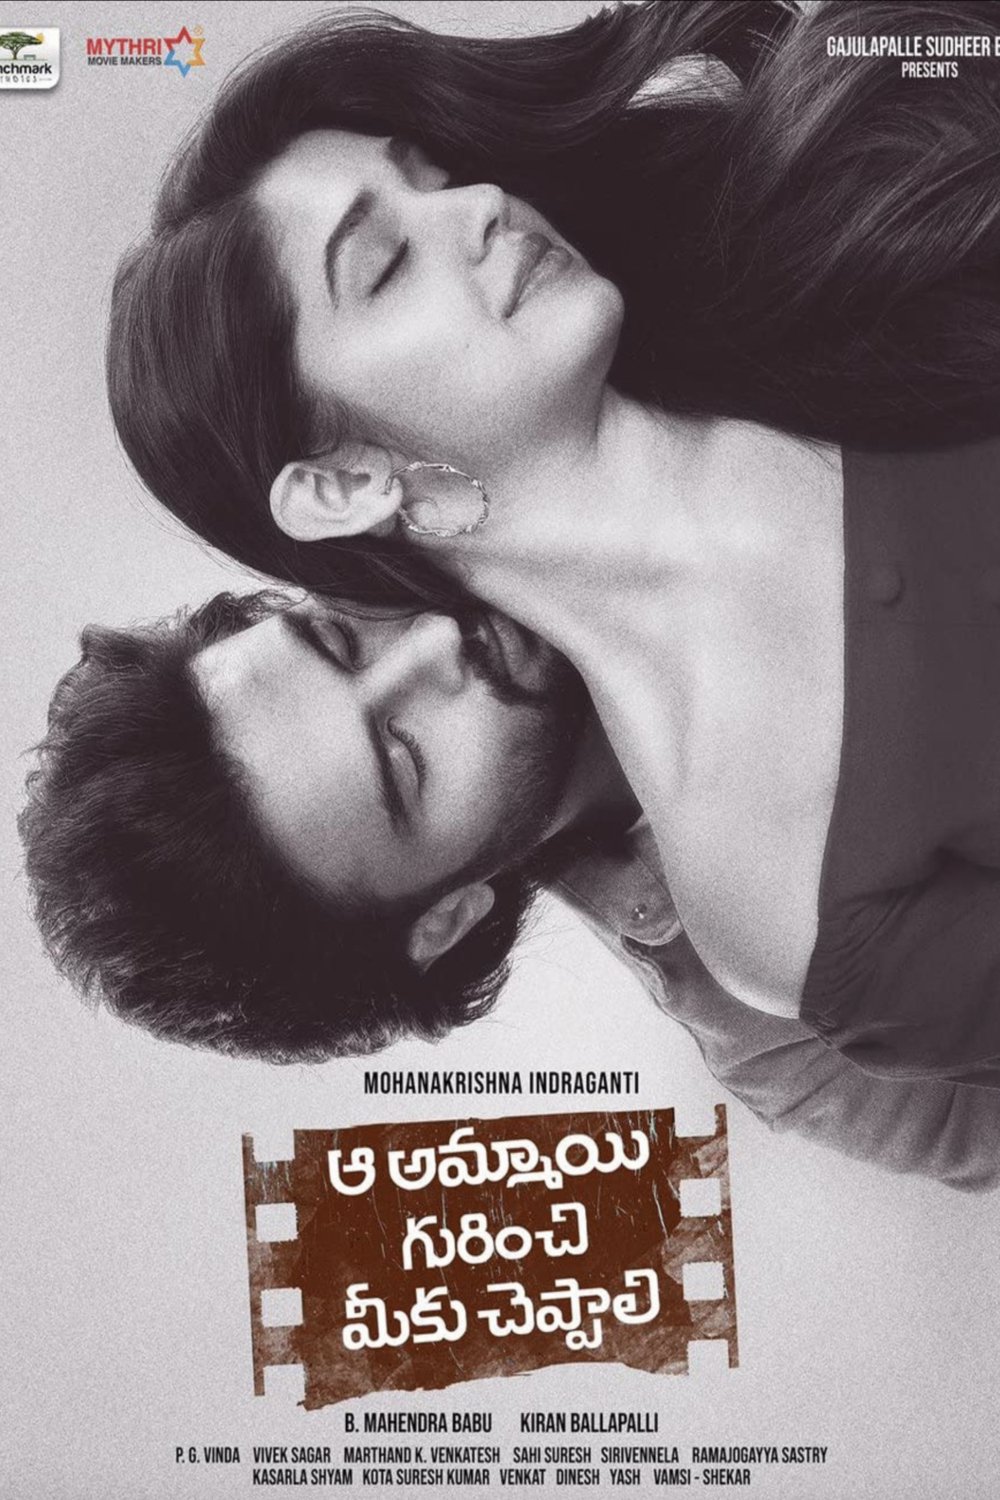 Telugu poster of the movie Aa Ammayi Gurinchi Meeku Cheppali